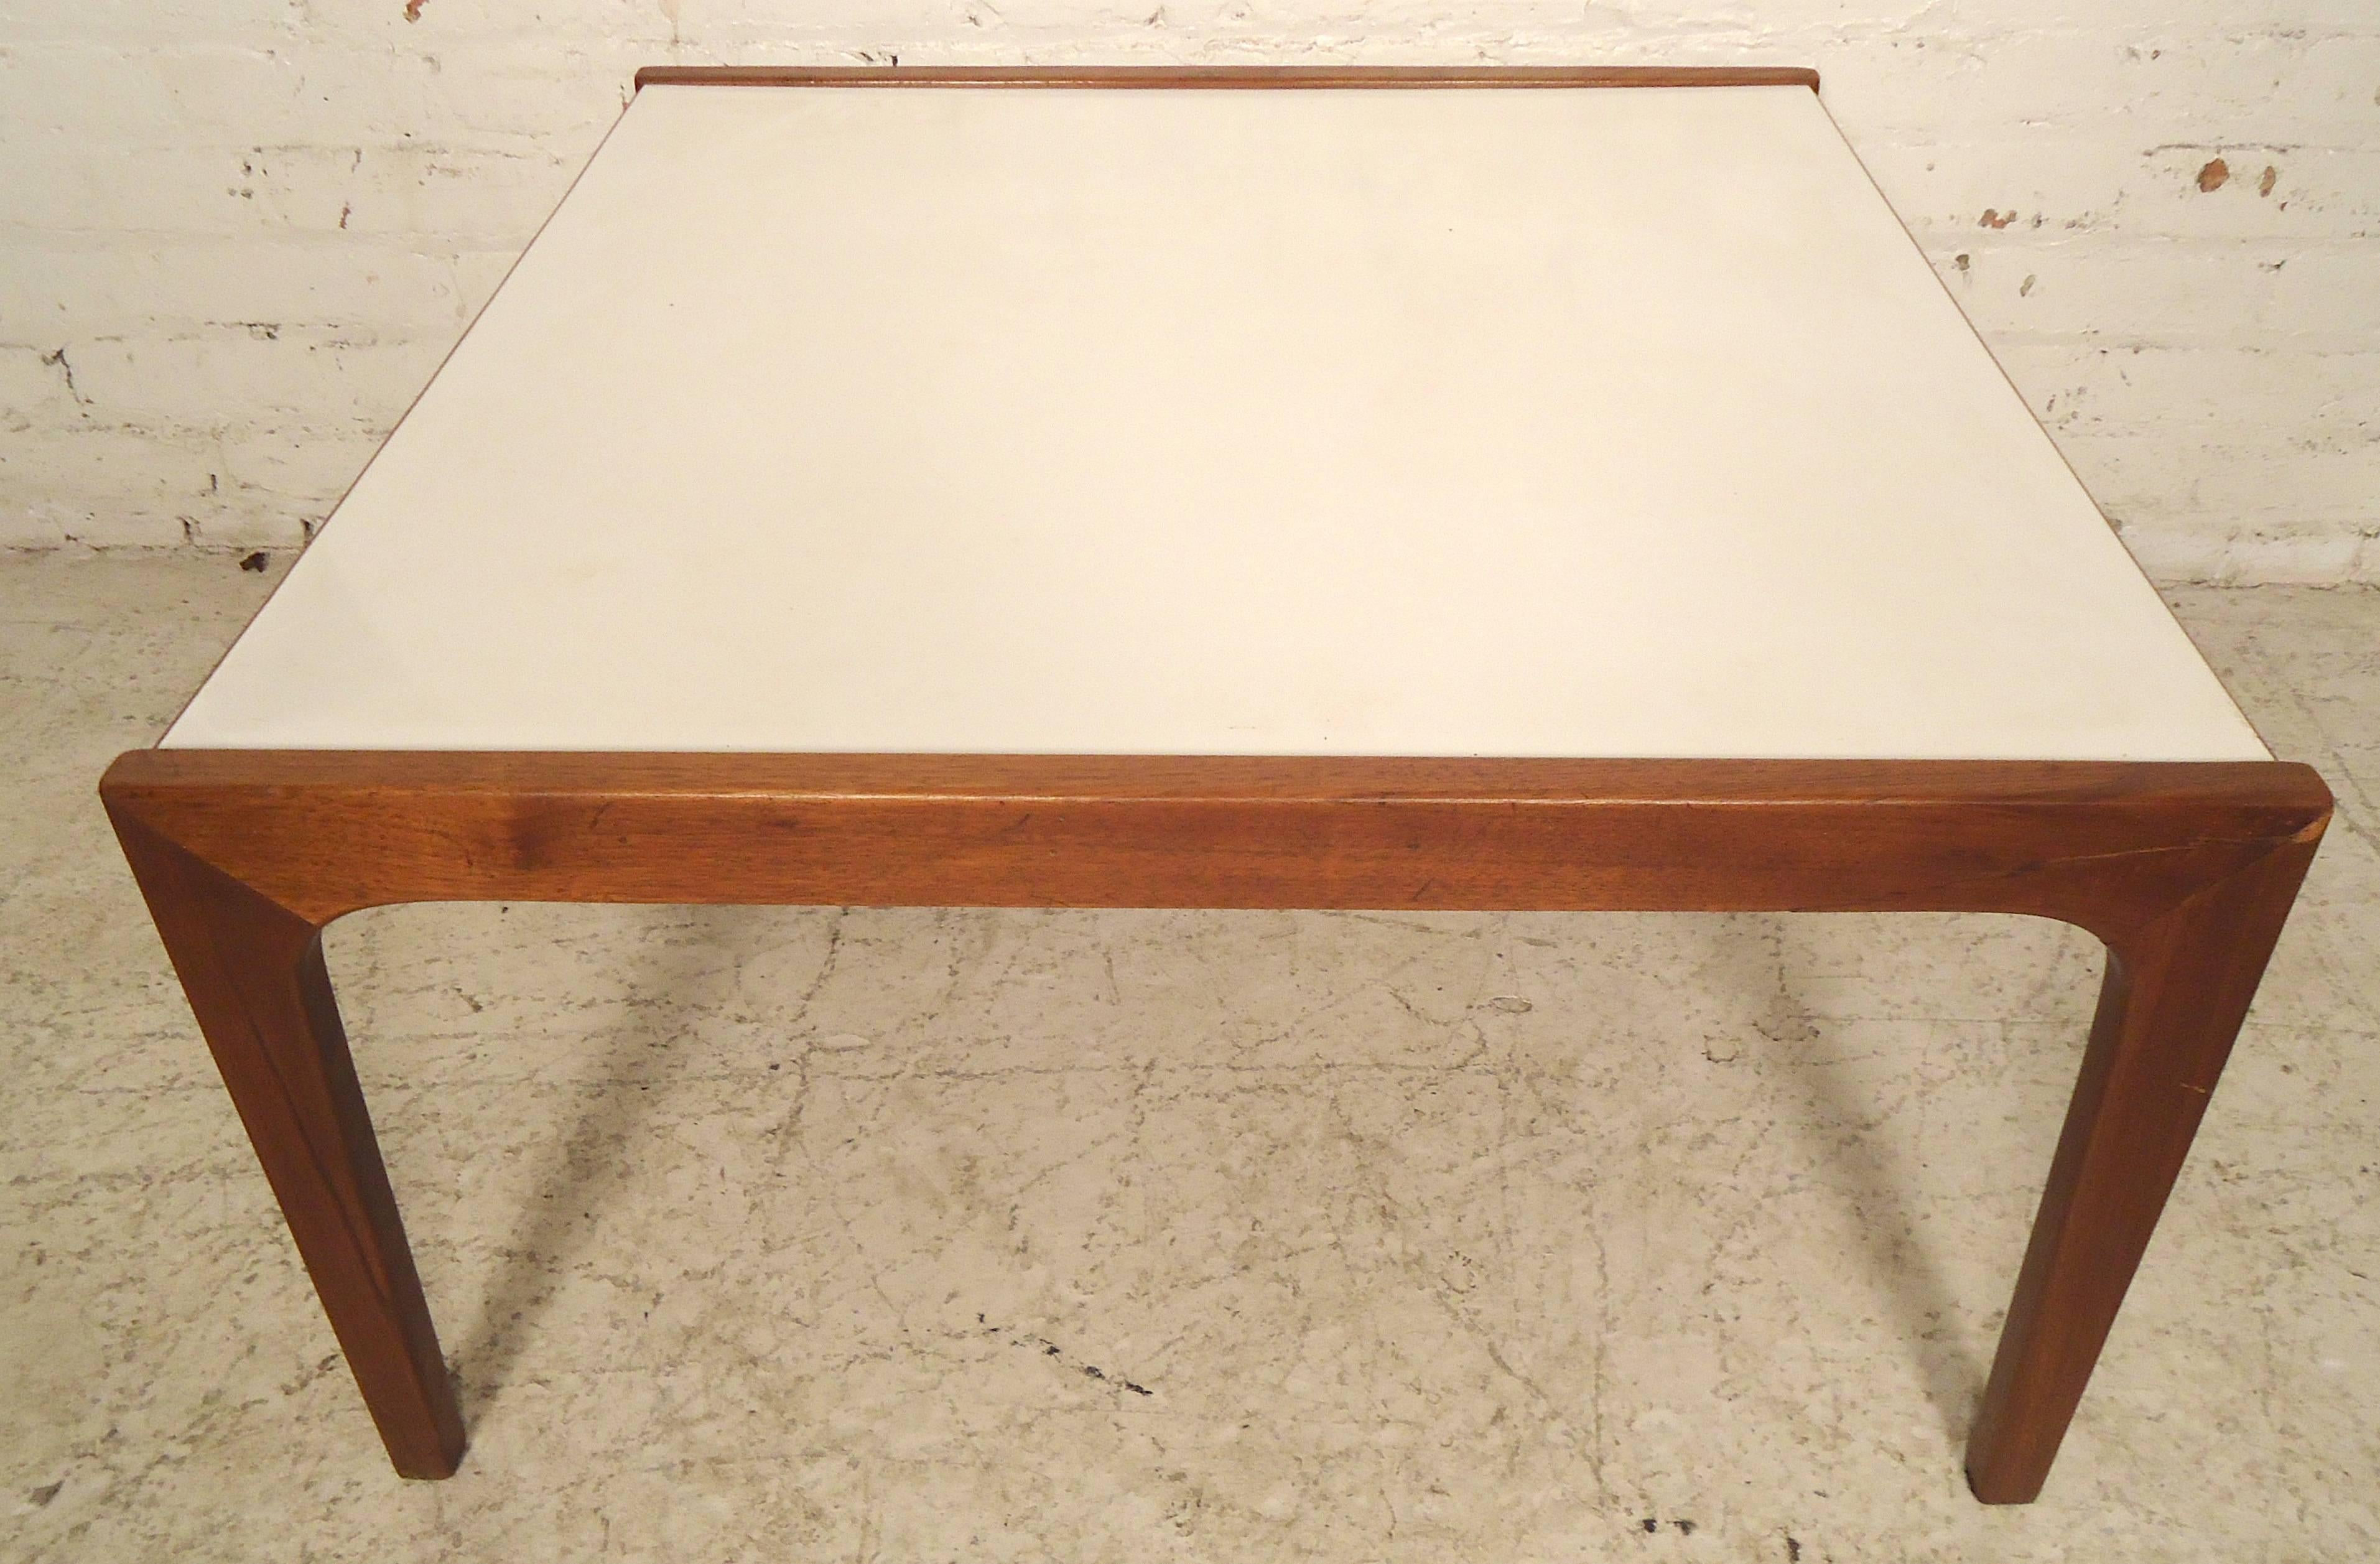 Table vintage avec plateau en stratifié et pieds sculptés. Dessus blanc accentué et cadre en noyer.

(Veuillez confirmer l'emplacement de l'article - NY ou NJ - avec le concessionnaire).
 